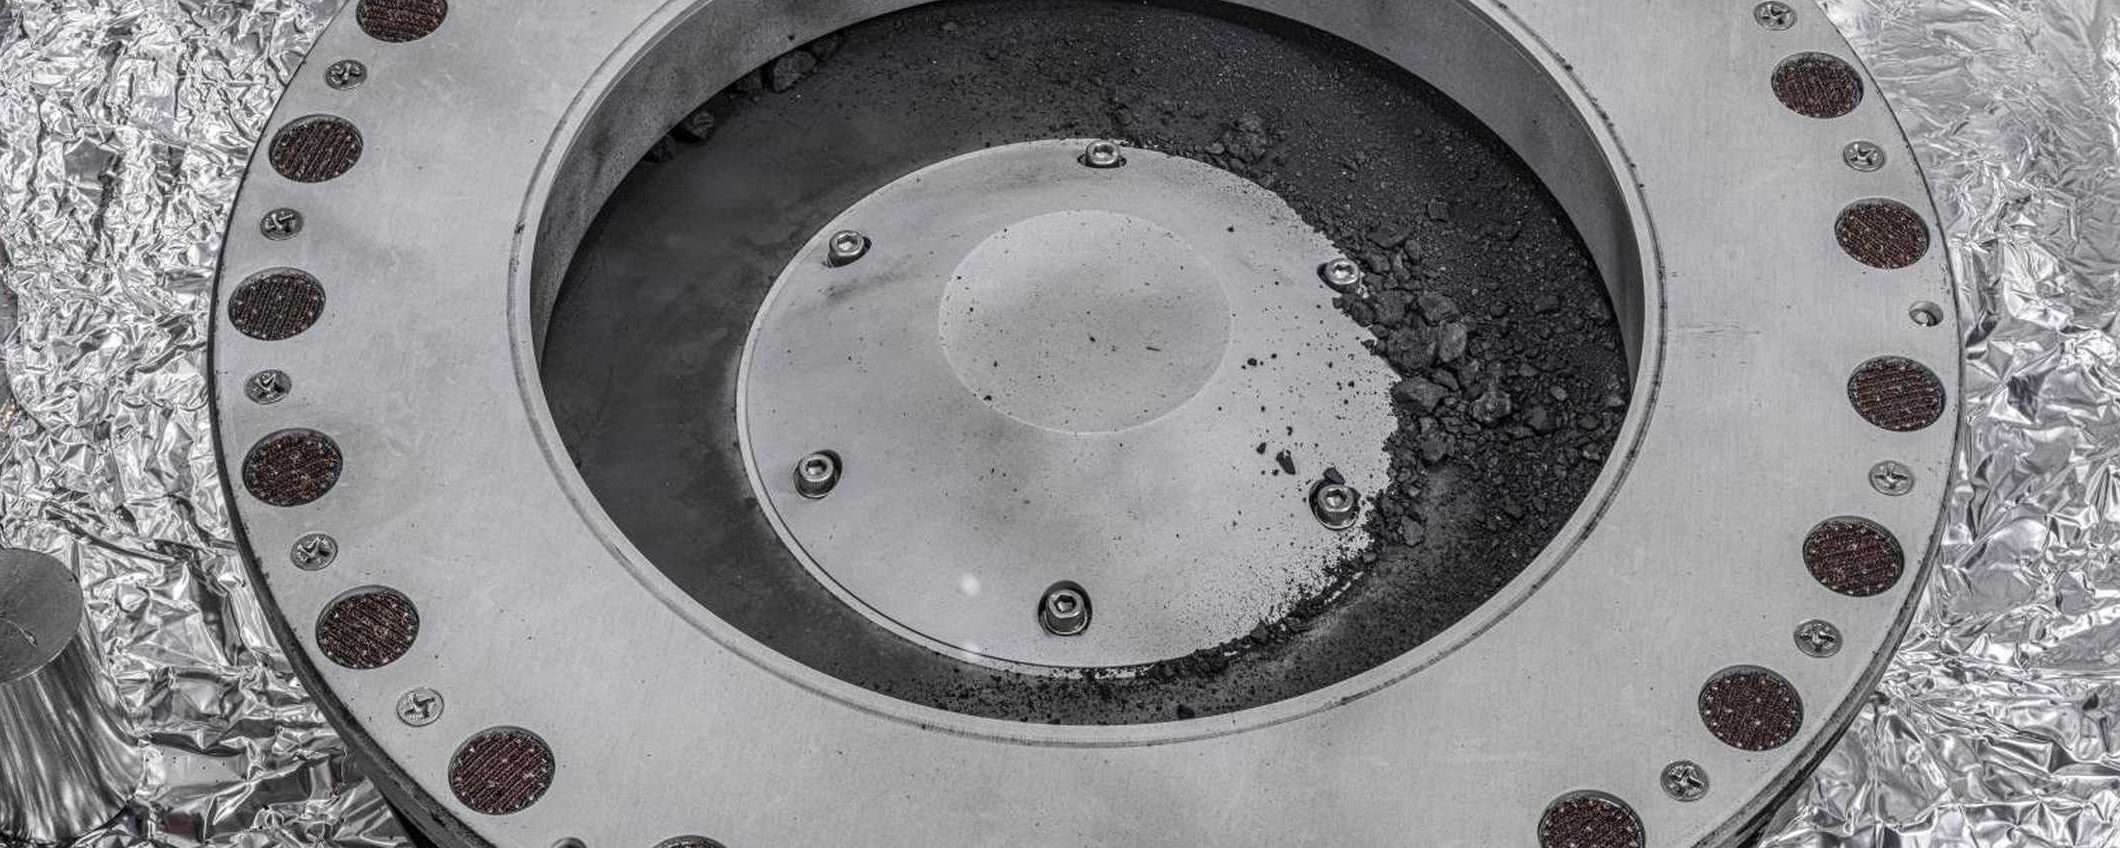 Carbone e acqua nel campione dell'asteroide Bennu